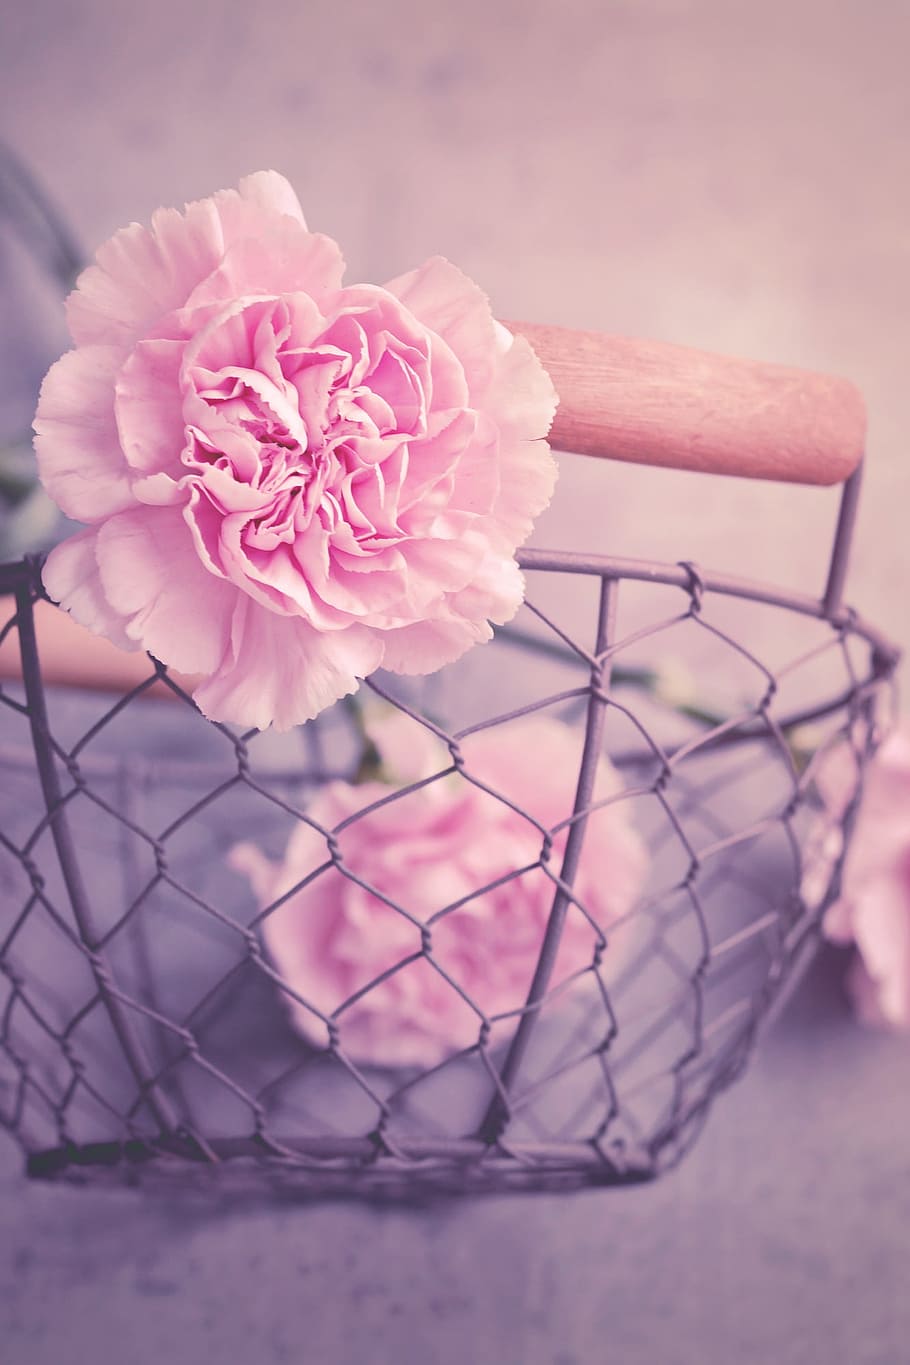 cloves, flowers, pink, carnation pink, petals, cut flowers, basket, metal basket, close, pink color